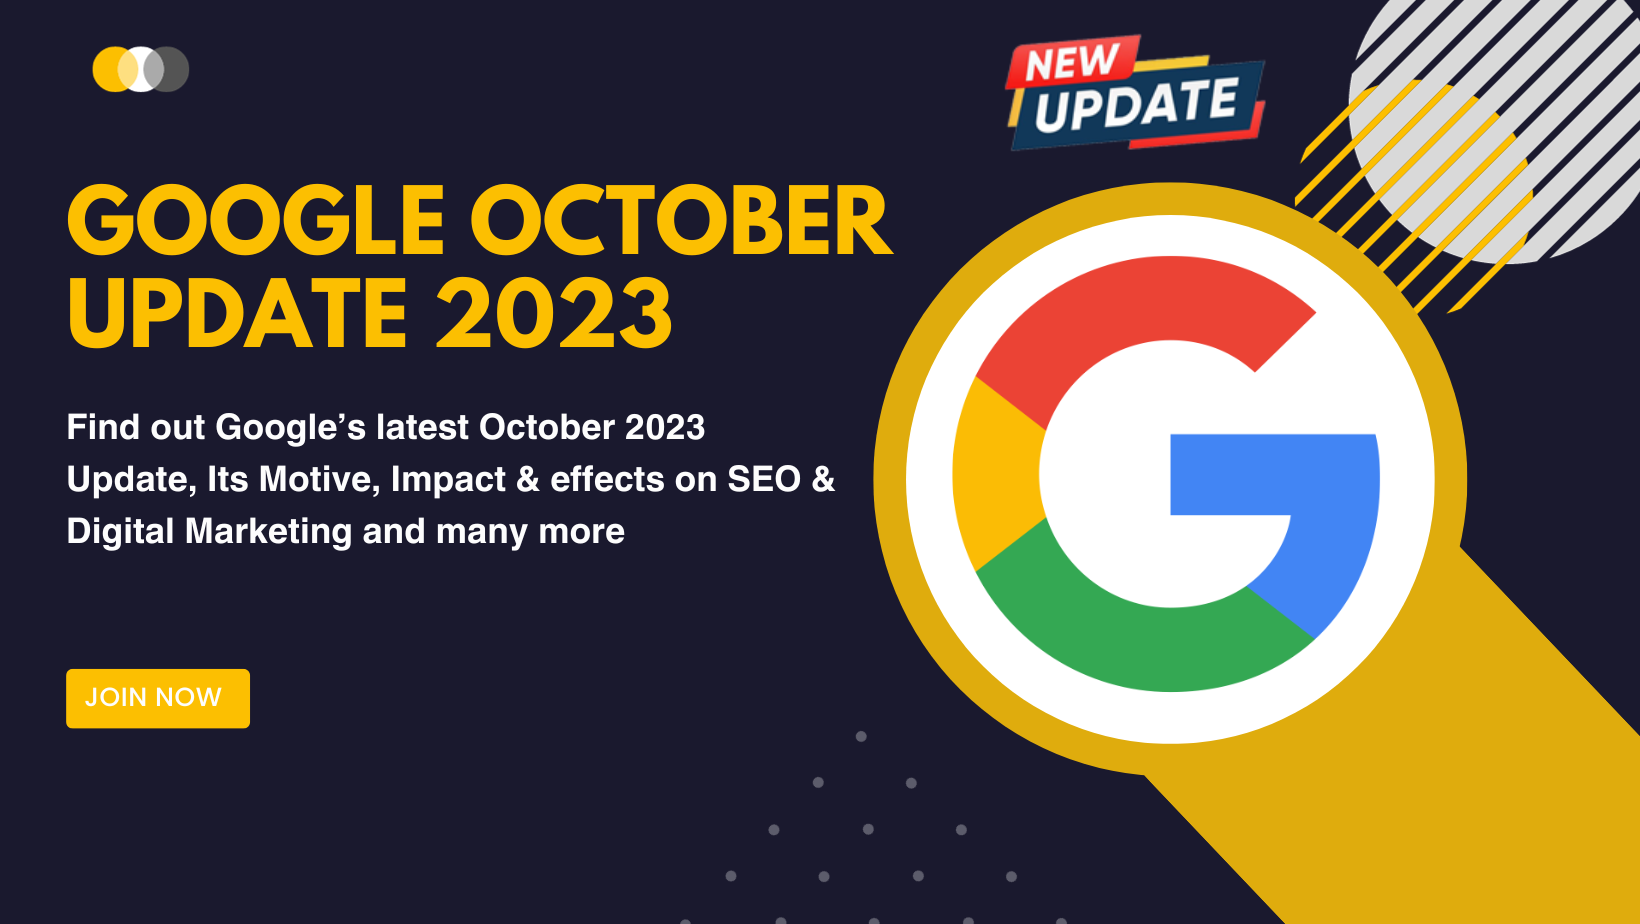 Google October Update 2023